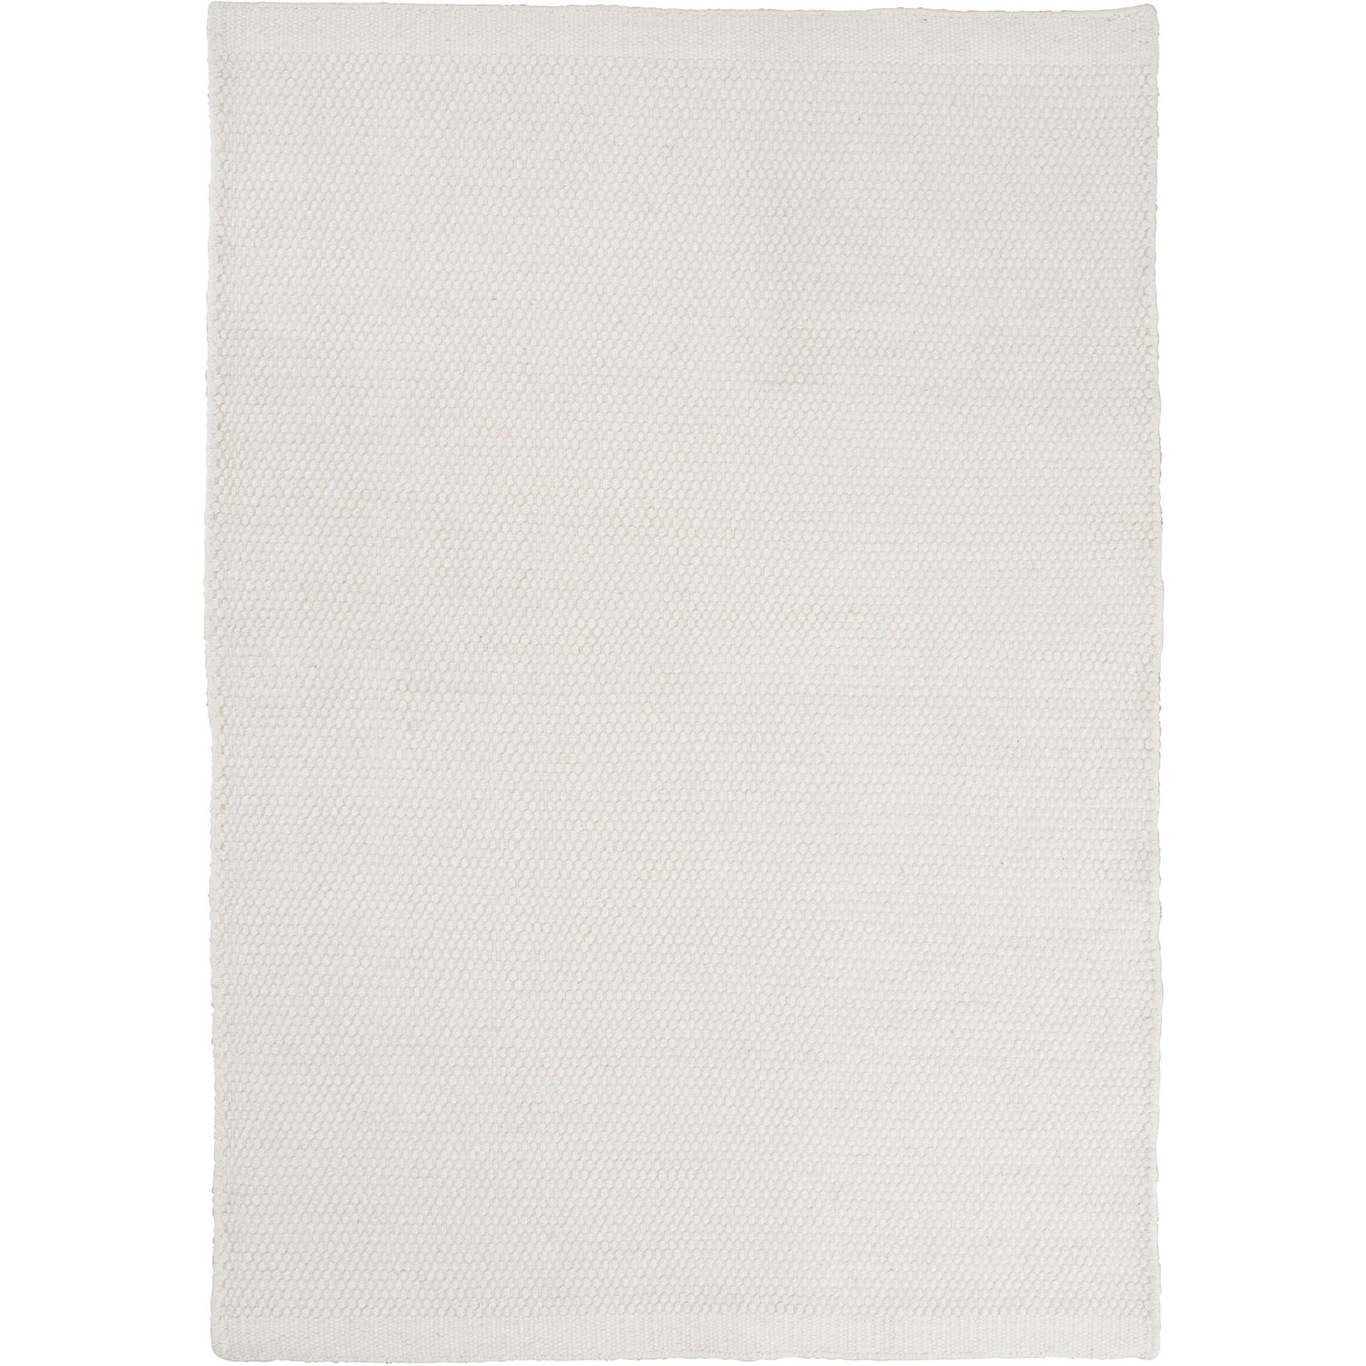 Asko Teppich Weiß, 140x200 cm